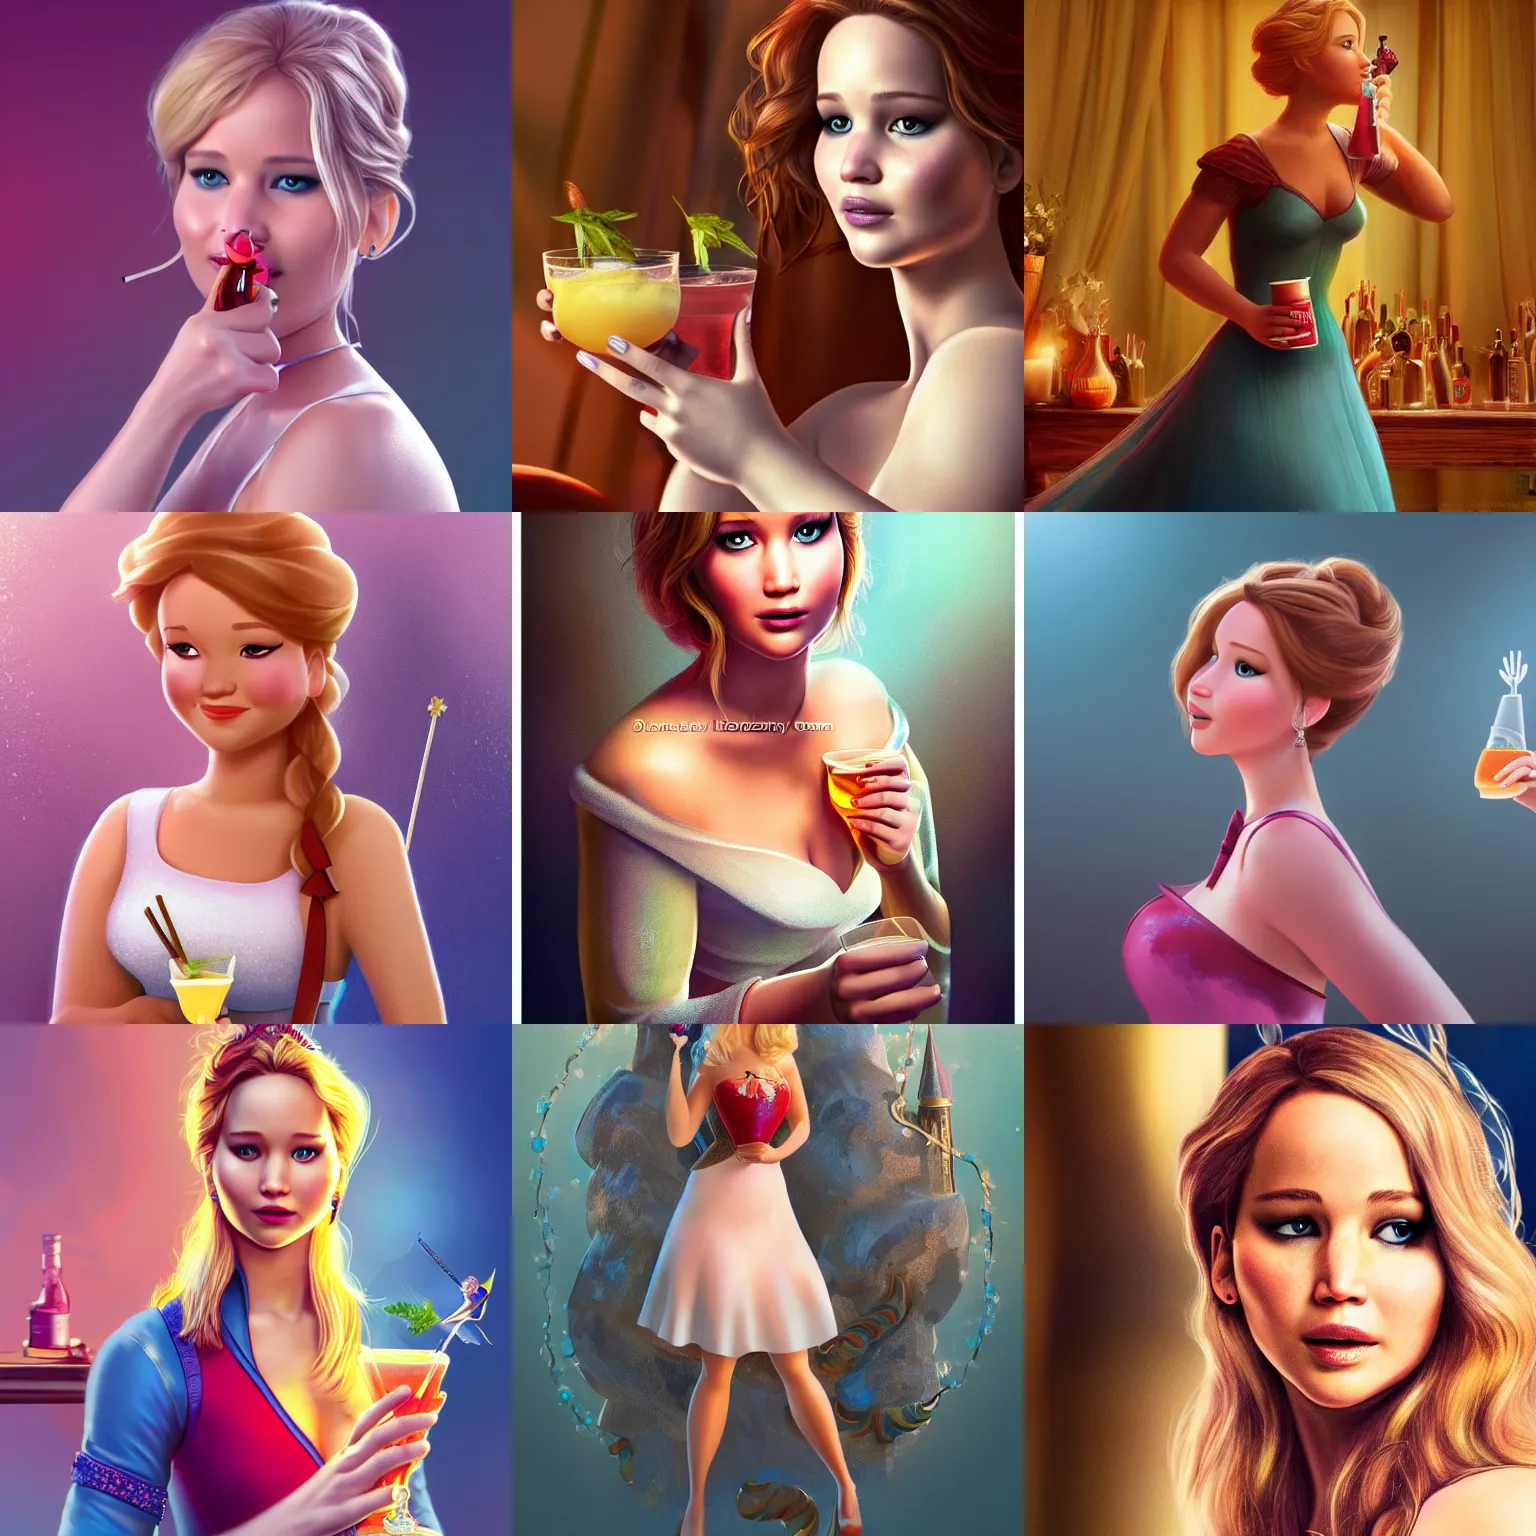 Prompt: Jennifer Lawrence as Disney princess sipping cocktail, High quality illustration, trending on artstation, octane render, 4k, Pixar rendering,